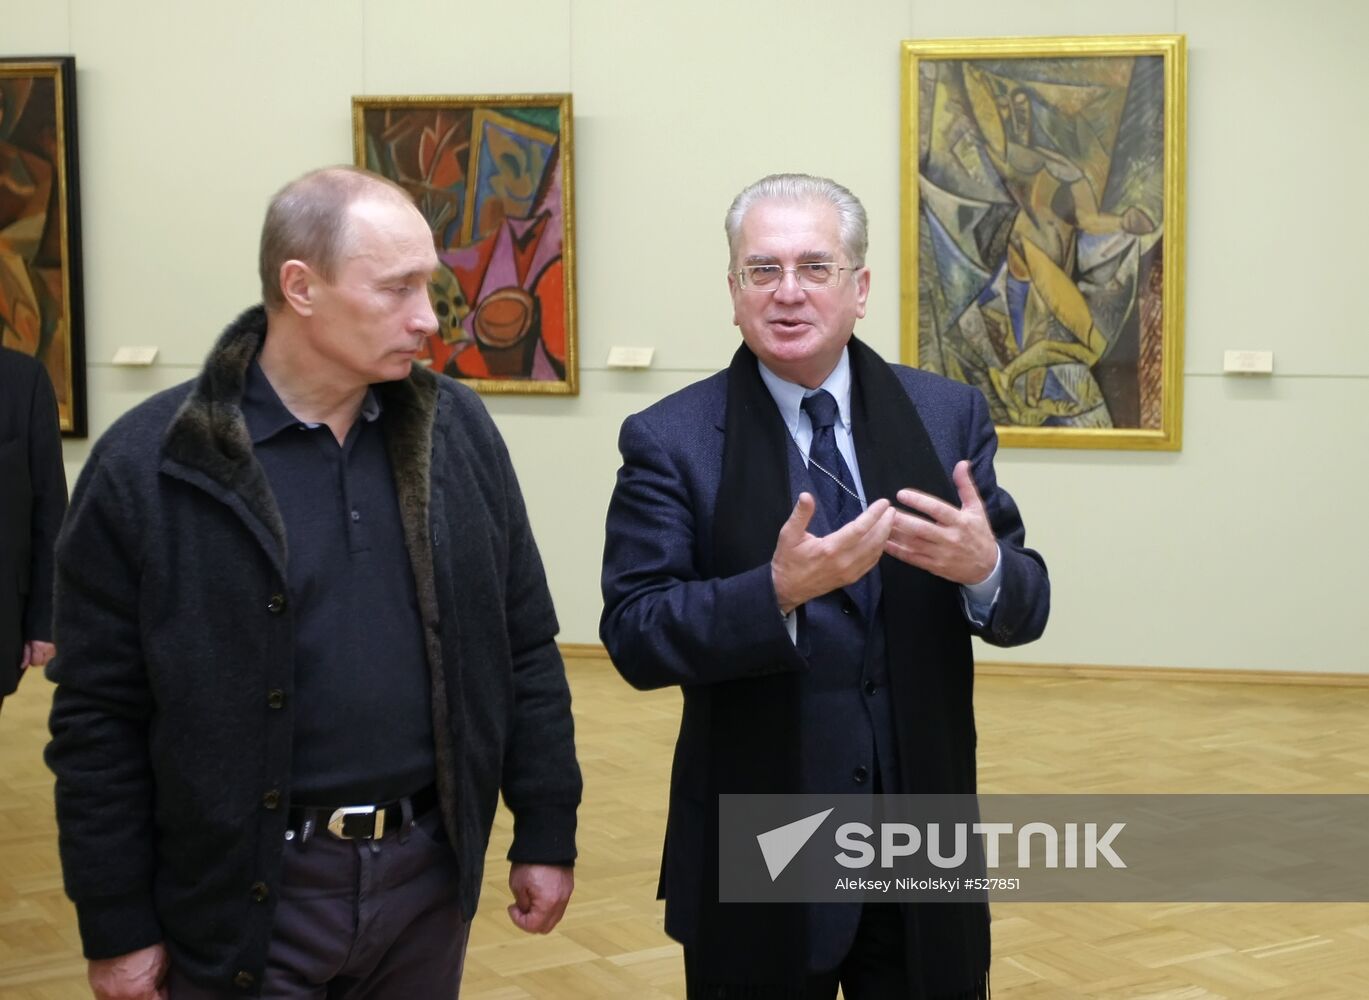 Vladimir Putin at State Hermitage